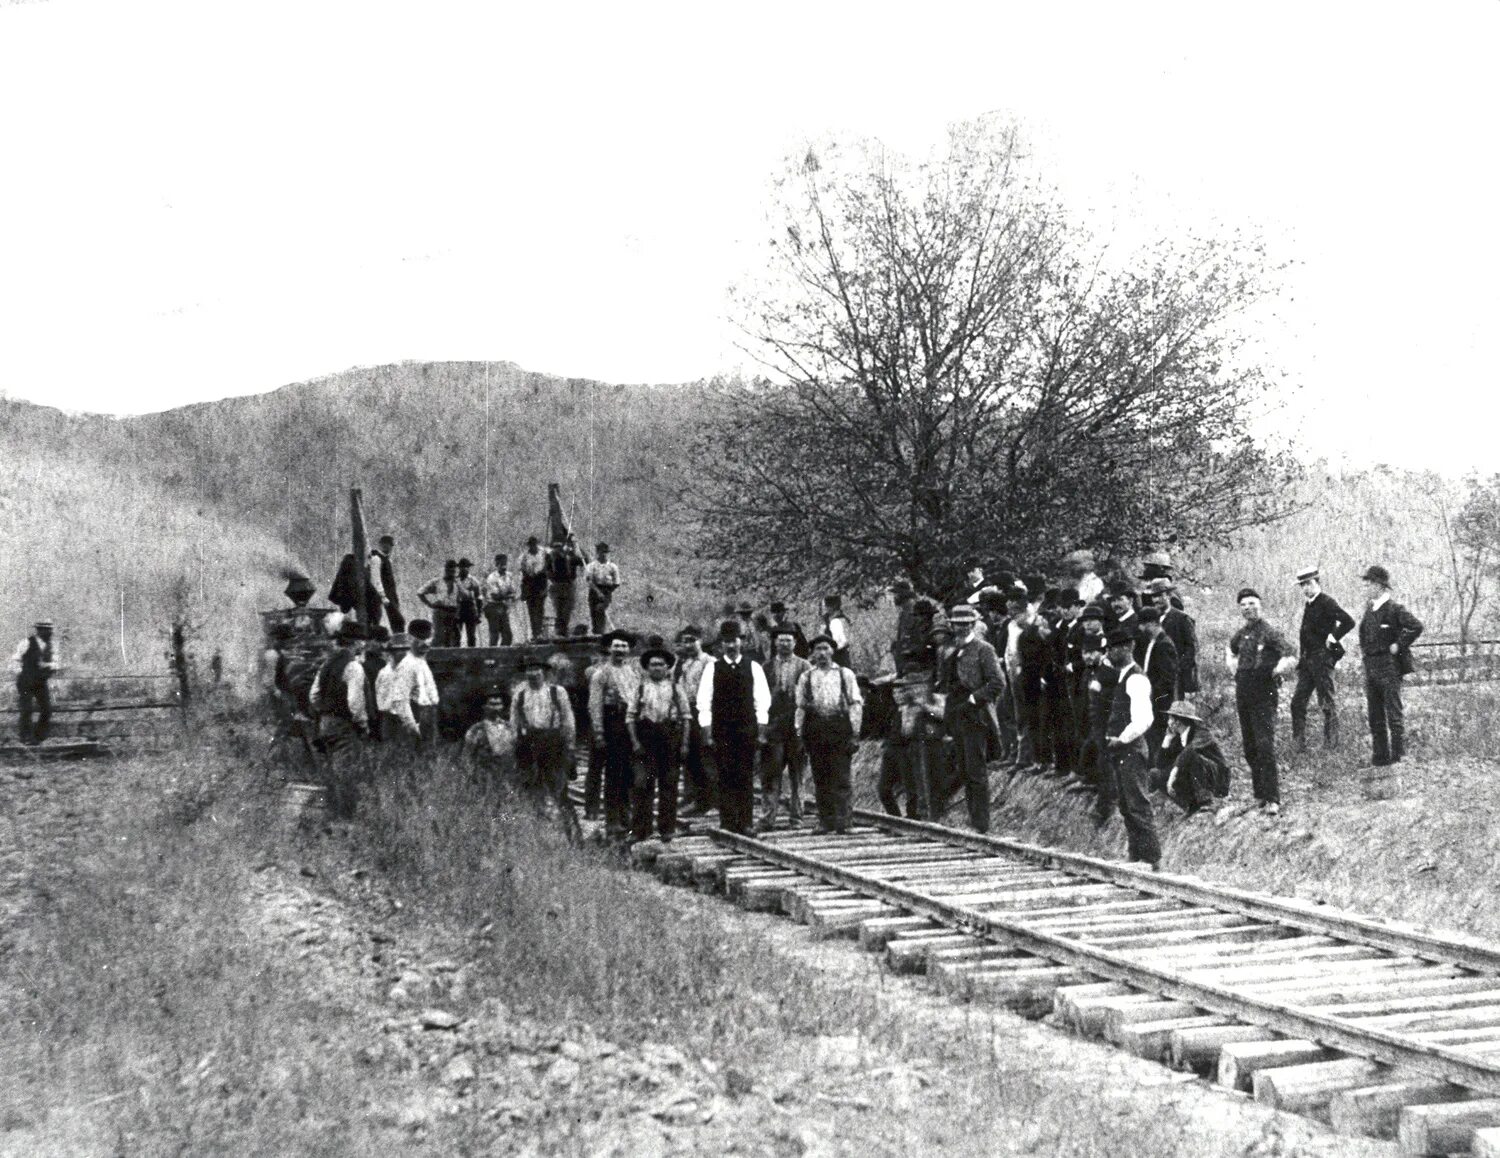 Самые густые железные дороги. Первая железная дорога в США 1830. Железные дороги США 19 век. Америка 1870 железная дорога. Первые железные дороги в США.